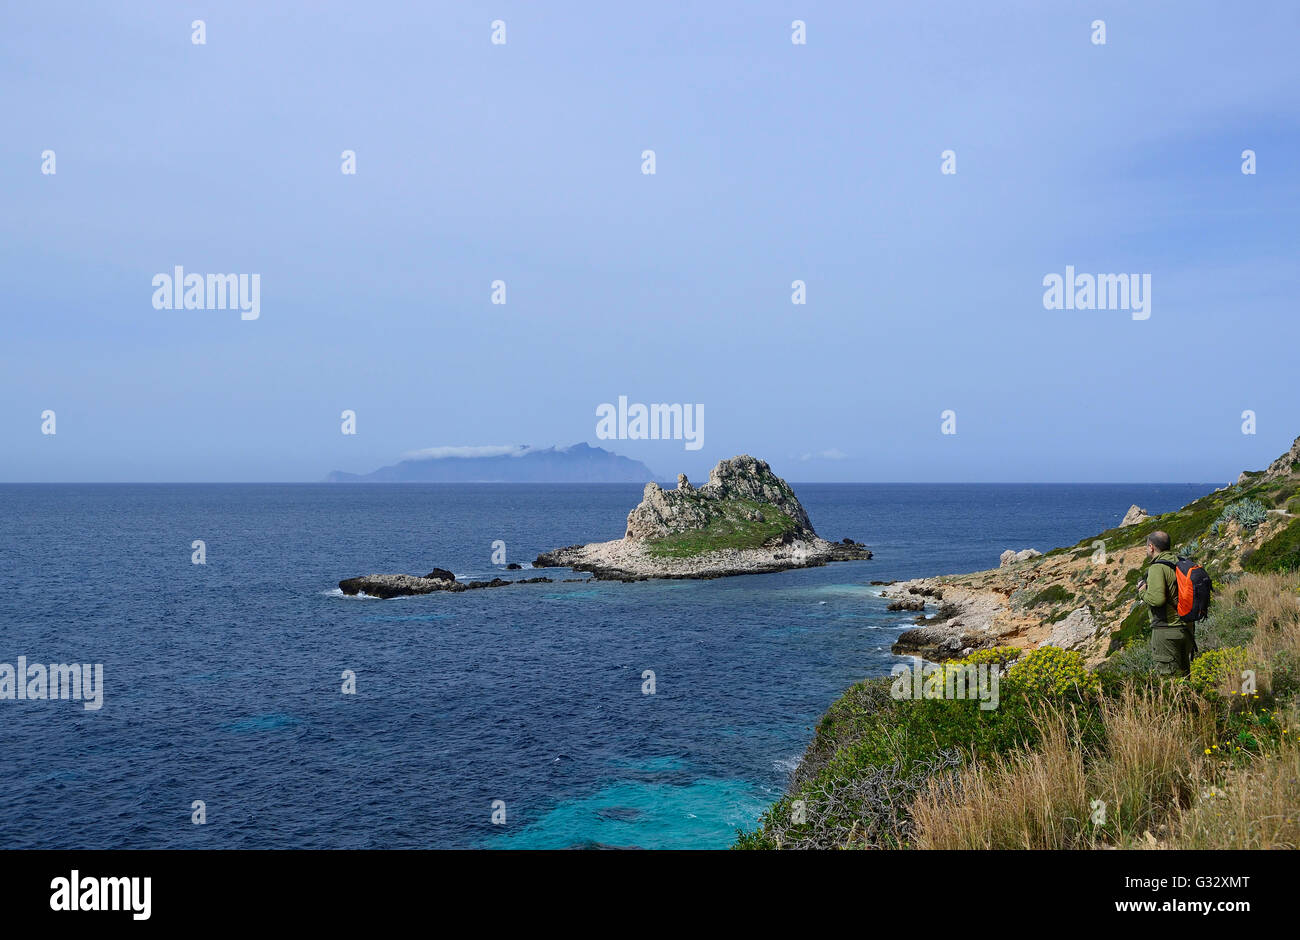 Talia, Sicilia, isole Egadi, isola di Levanzo, escursionista su un sentiero costiero affacciato sul mare con isola Faraglione in background Foto Stock